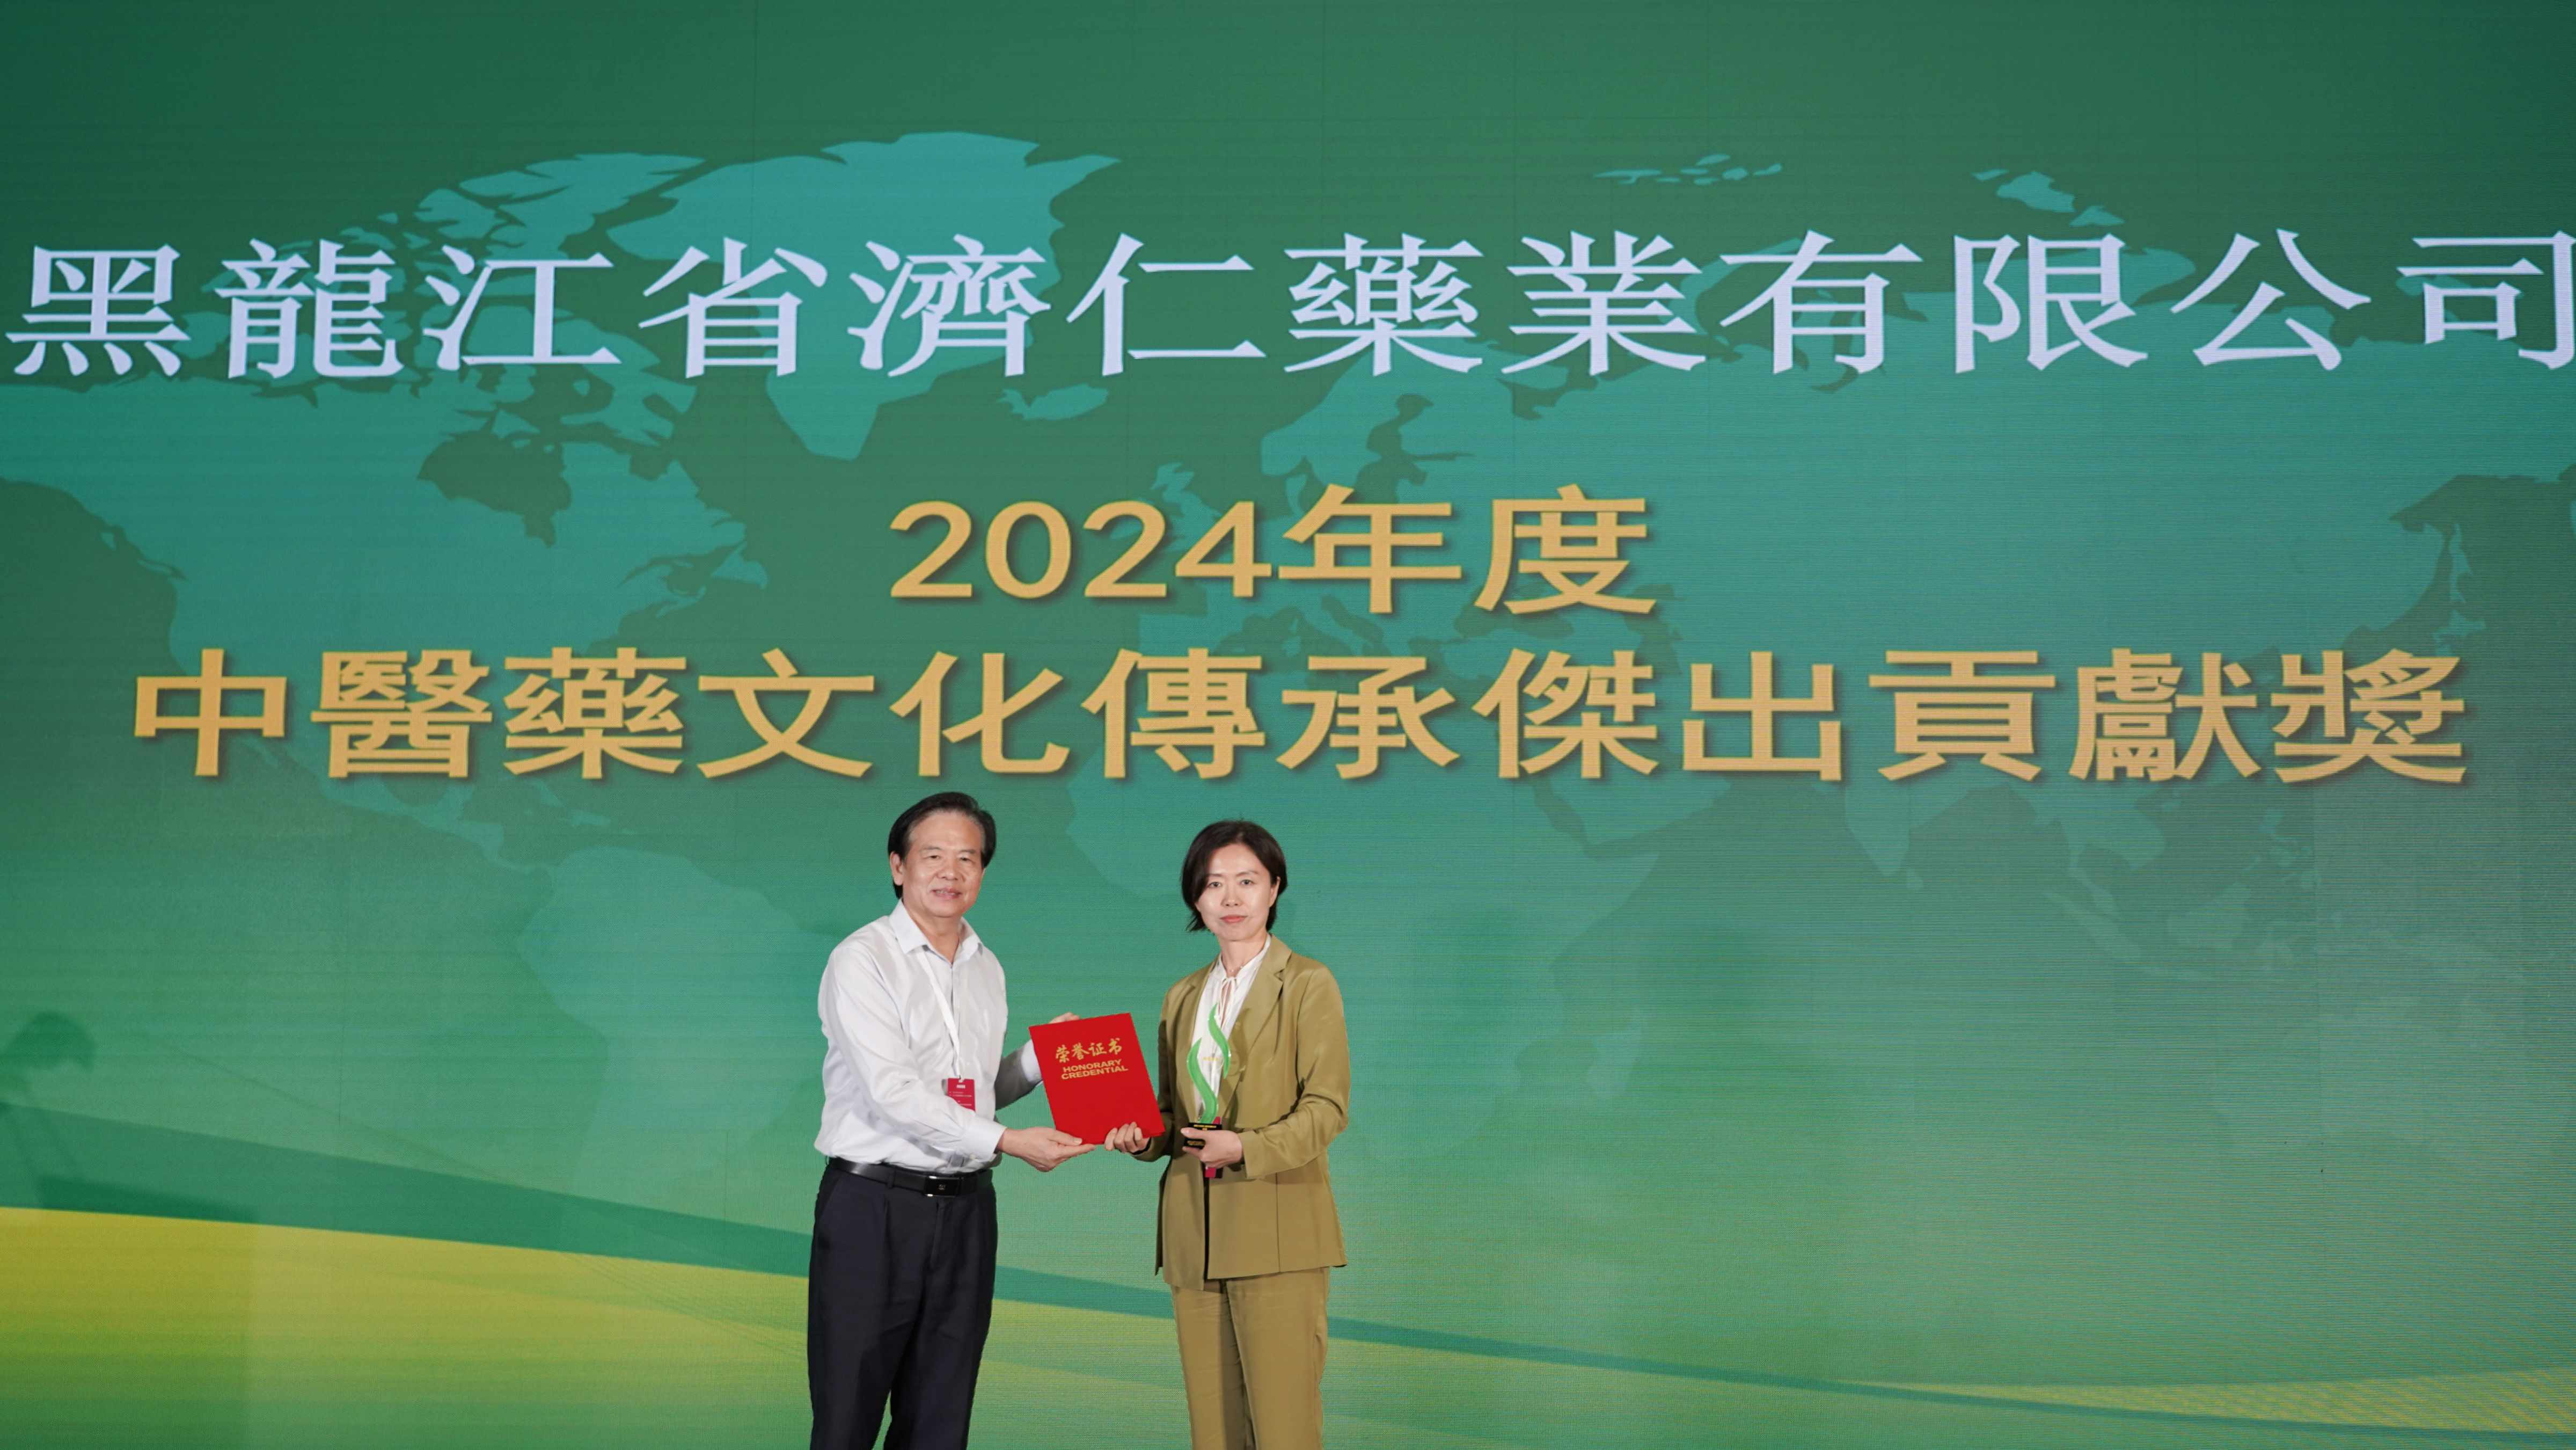 黑龍江省濟仁藥業榮獲「2024年度中醫藥文化傳承傑出貢獻獎」